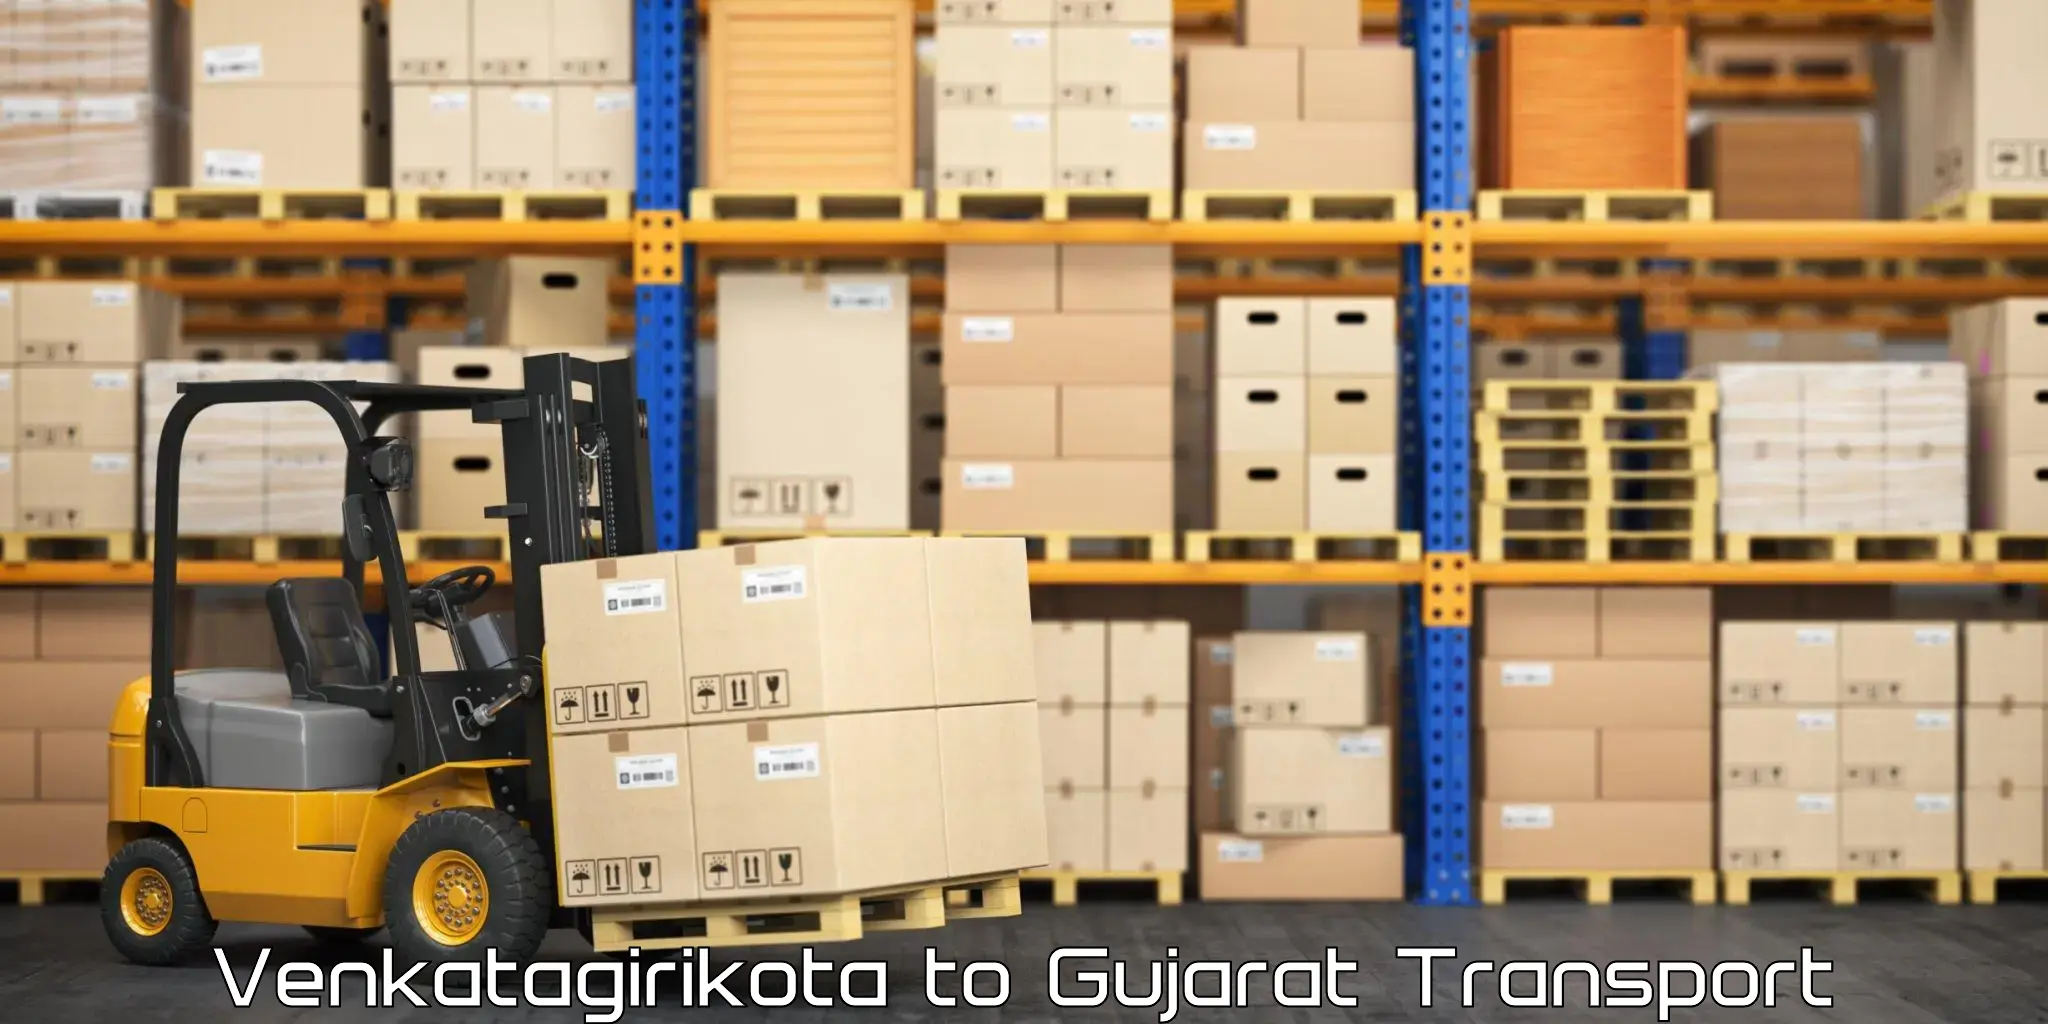 Cargo transport services in Venkatagirikota to Gujarat